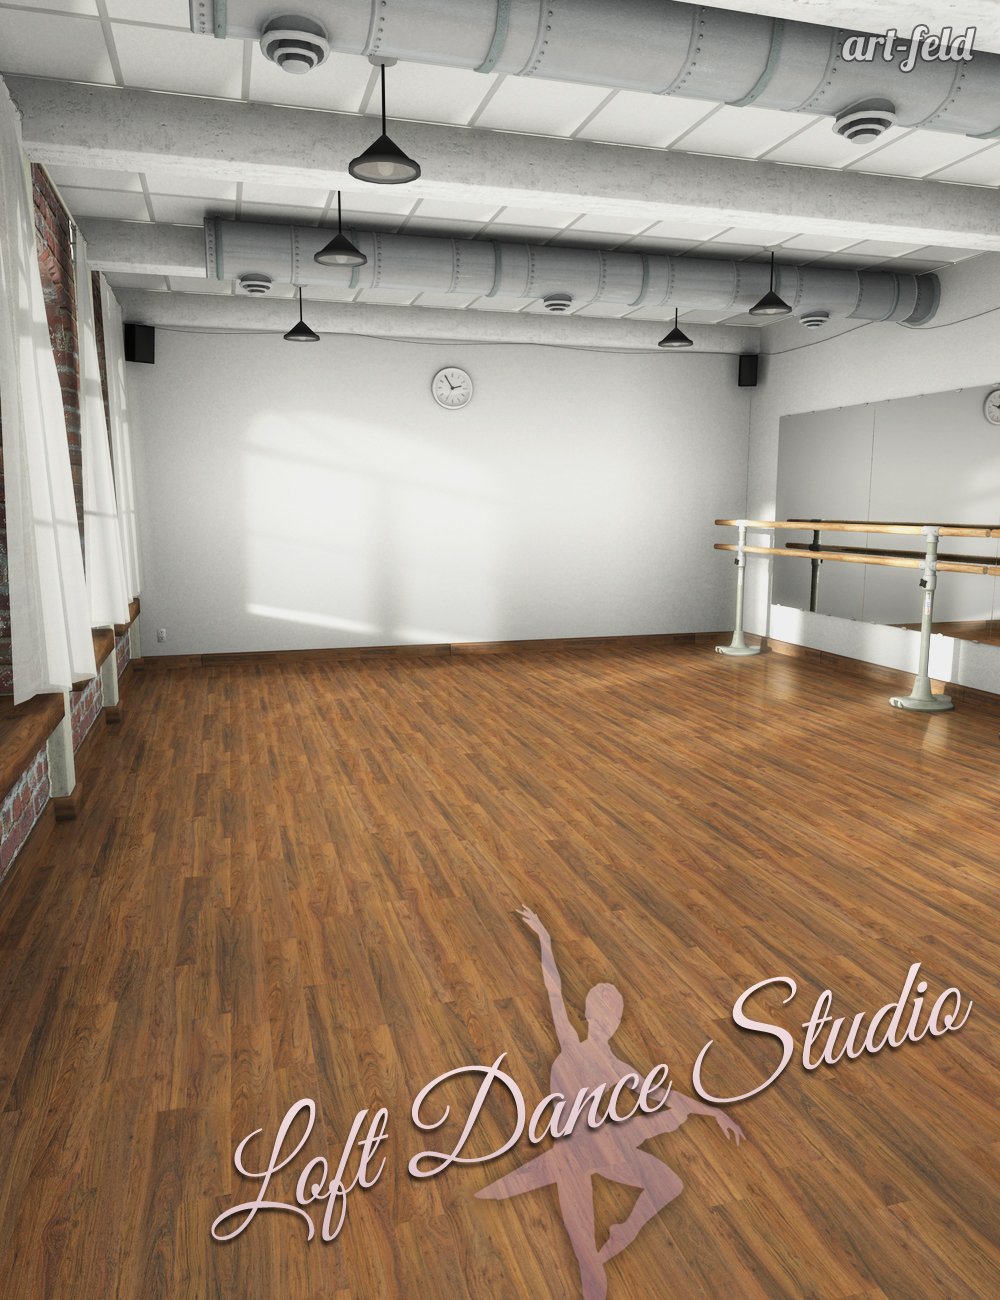 Loft Dance Studio by: art-feld, 3D Models by Daz 3D